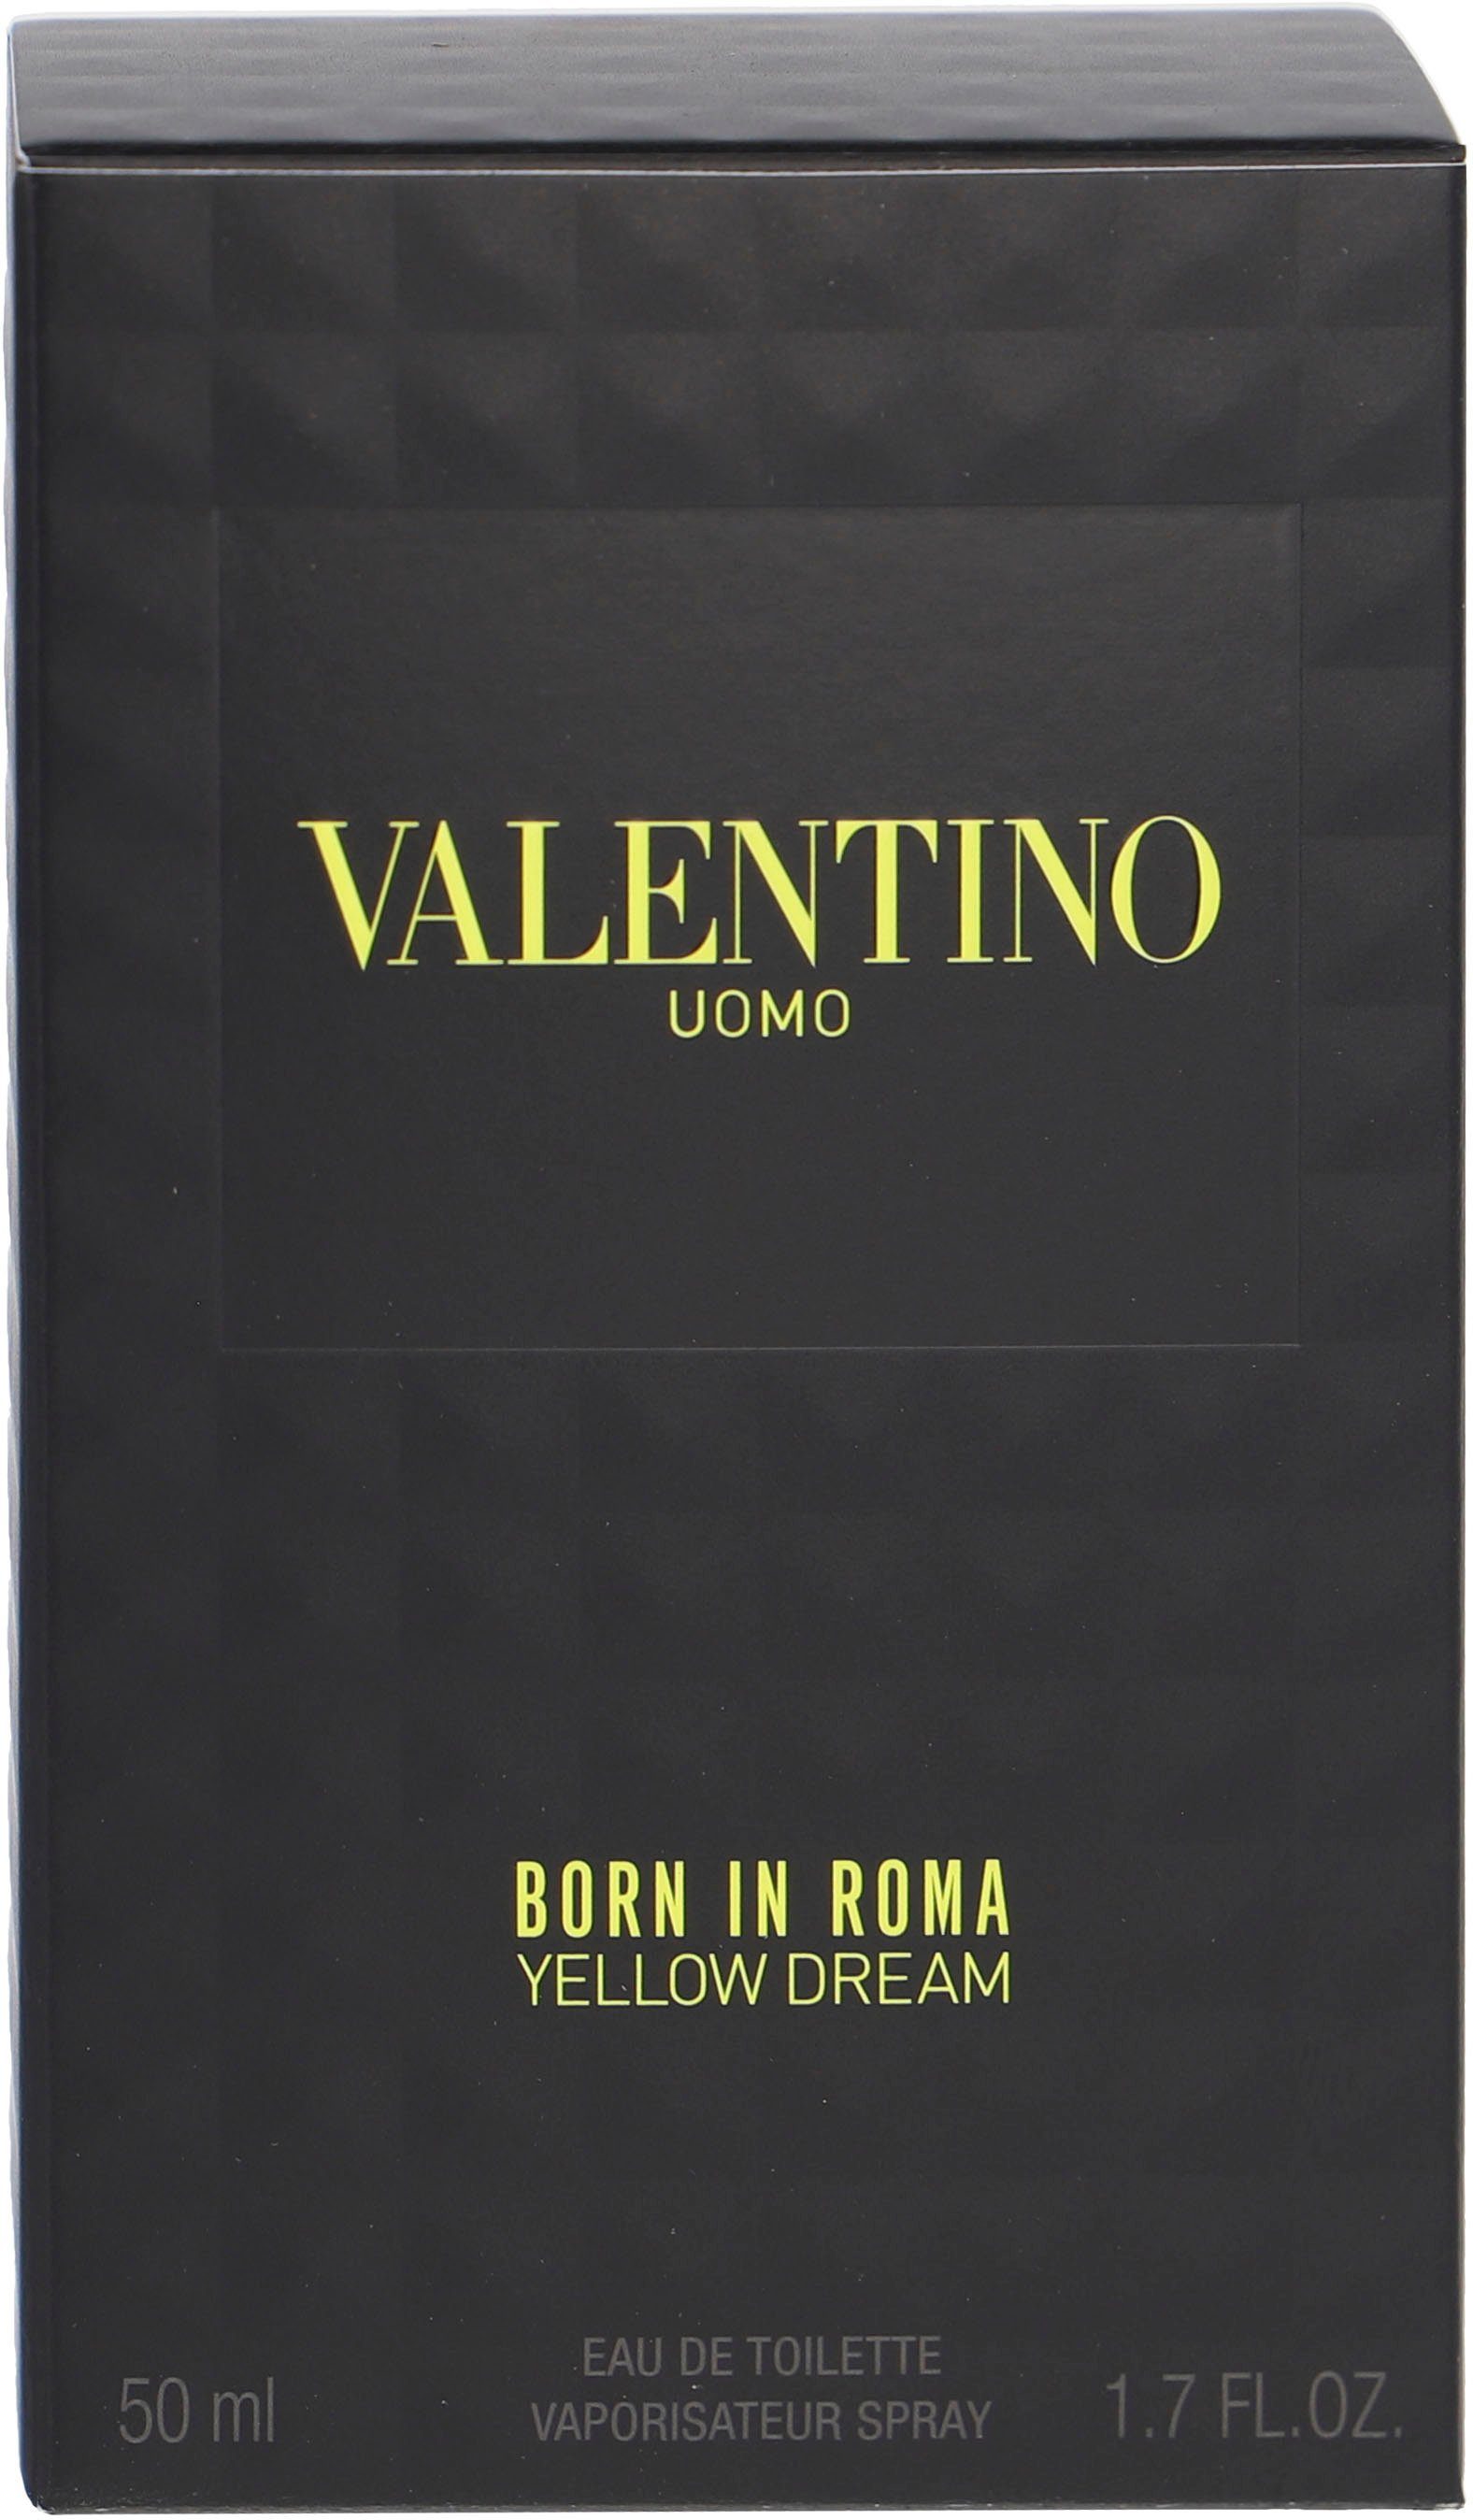 Valentino Roma Dream Eau Yellow Born In Uomo Toilette de